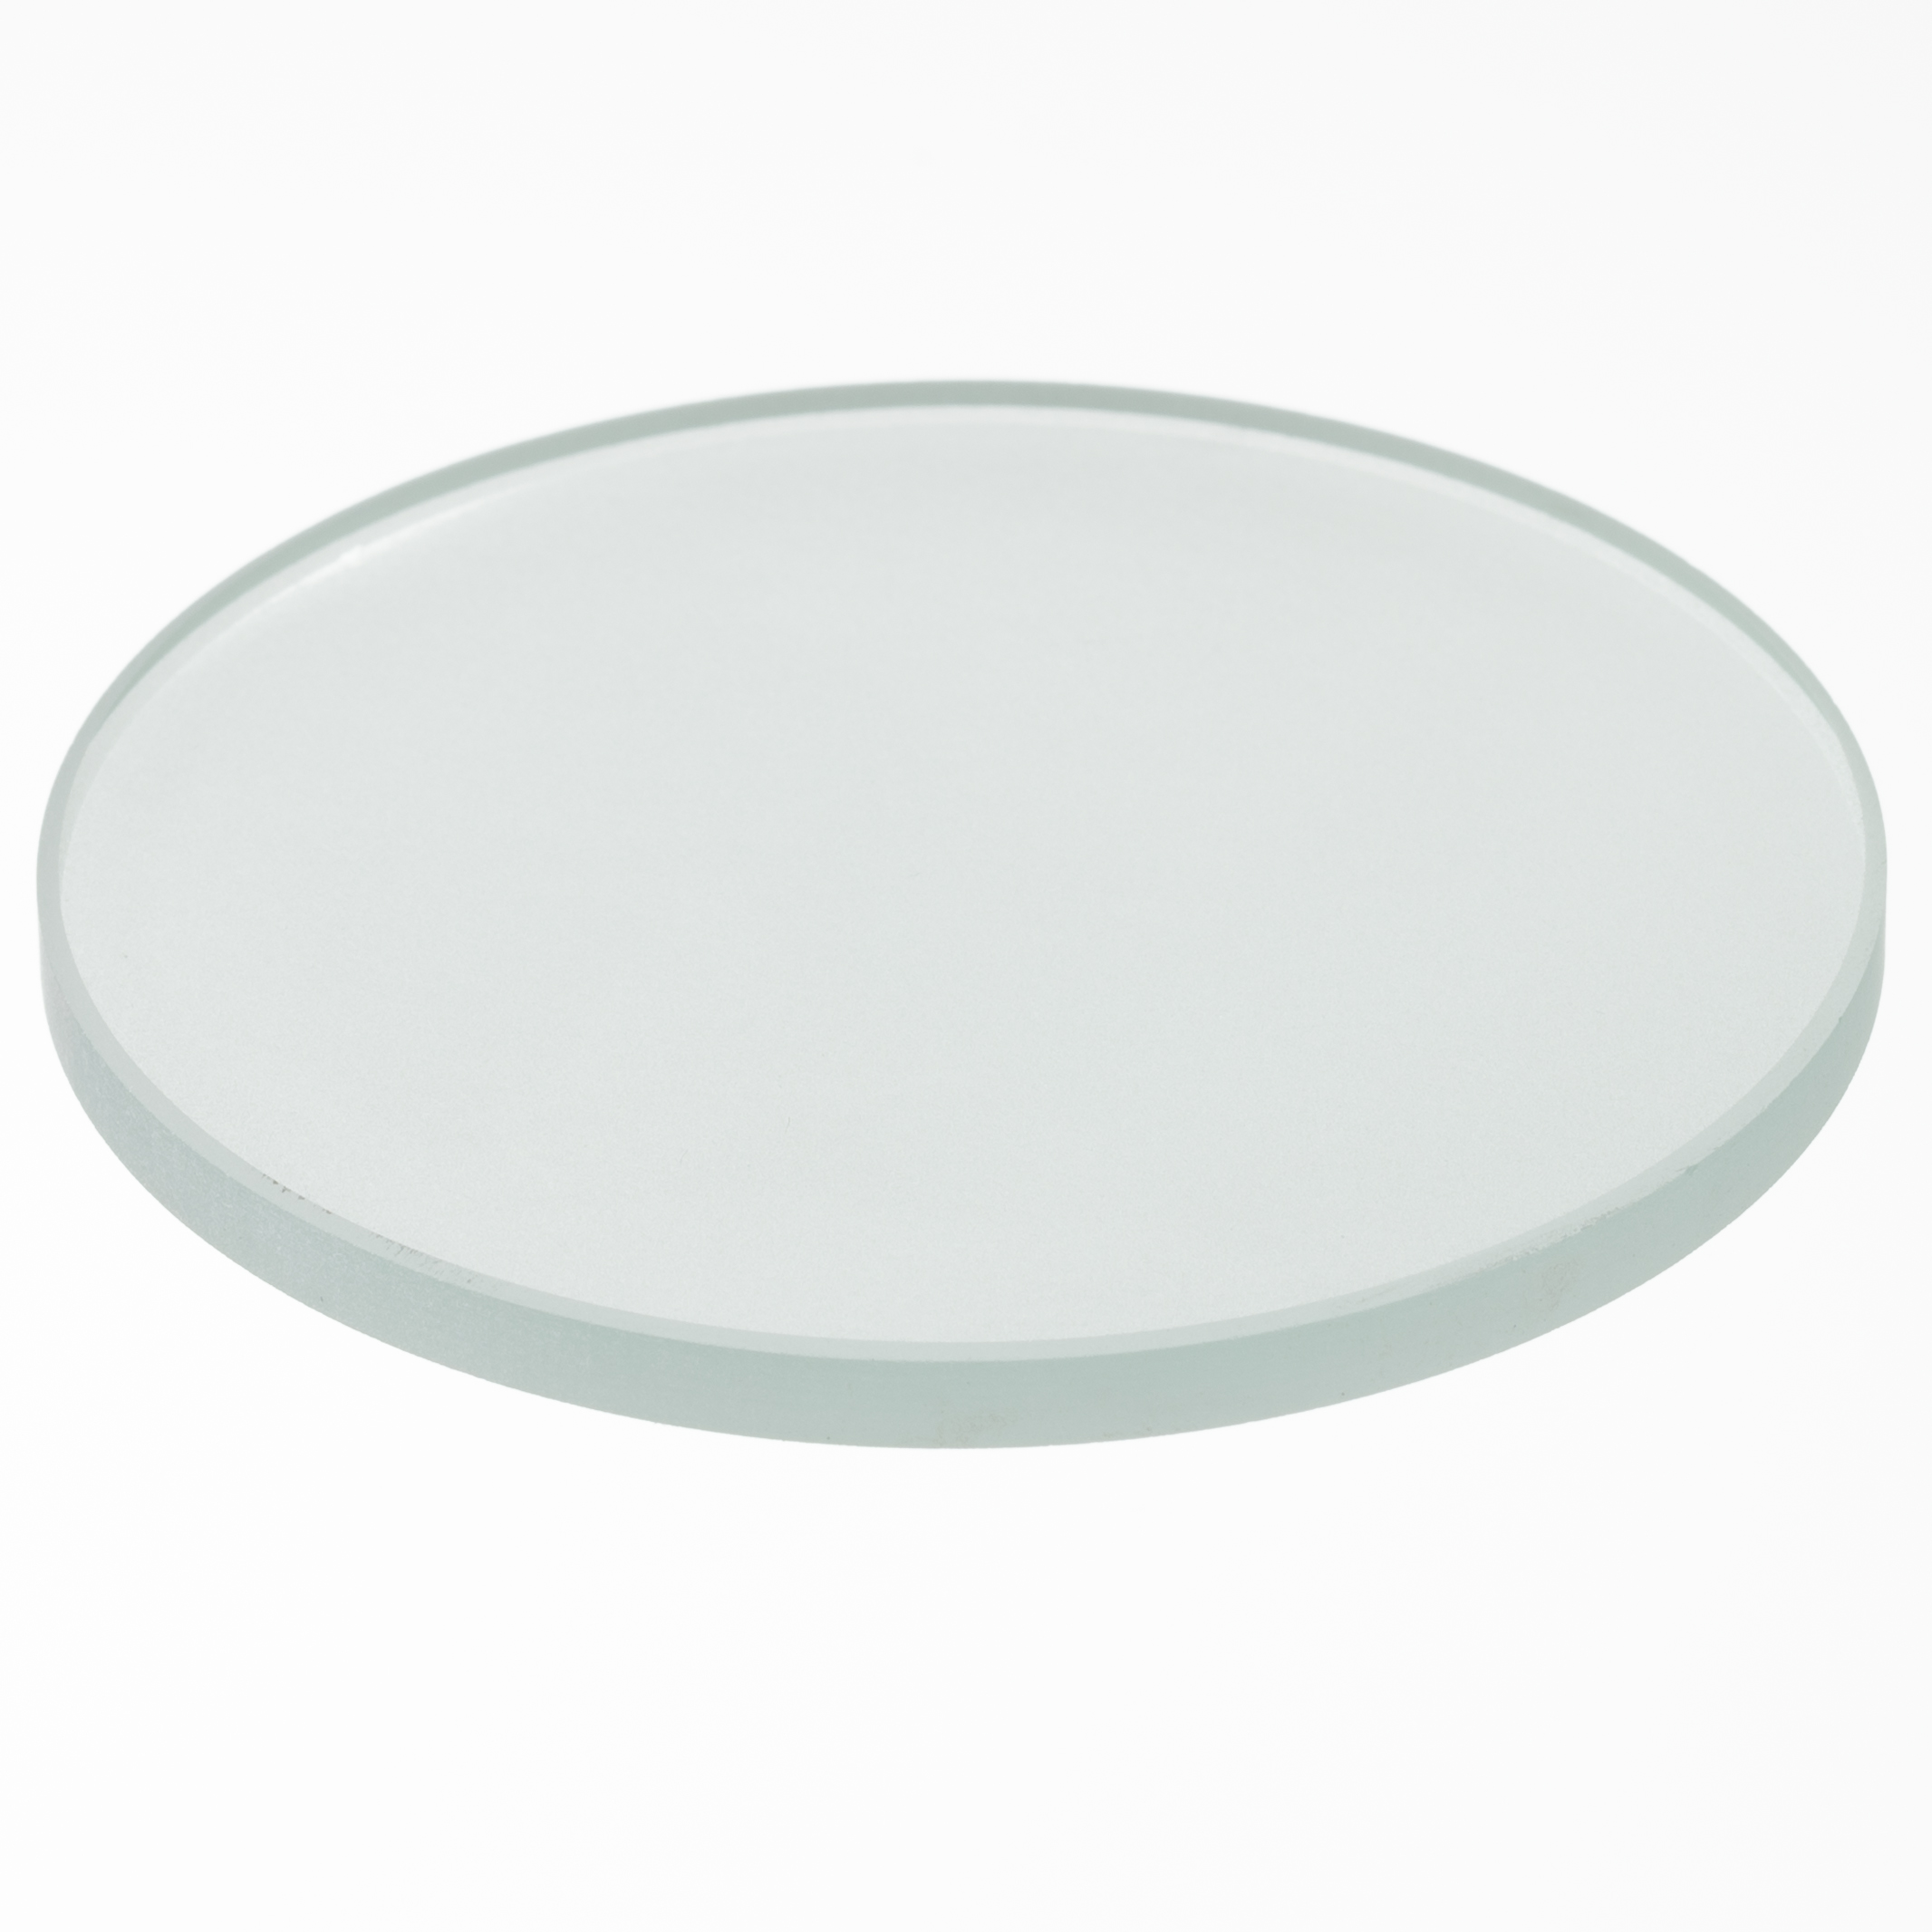 BRESSER Object plate glass (60 mm)